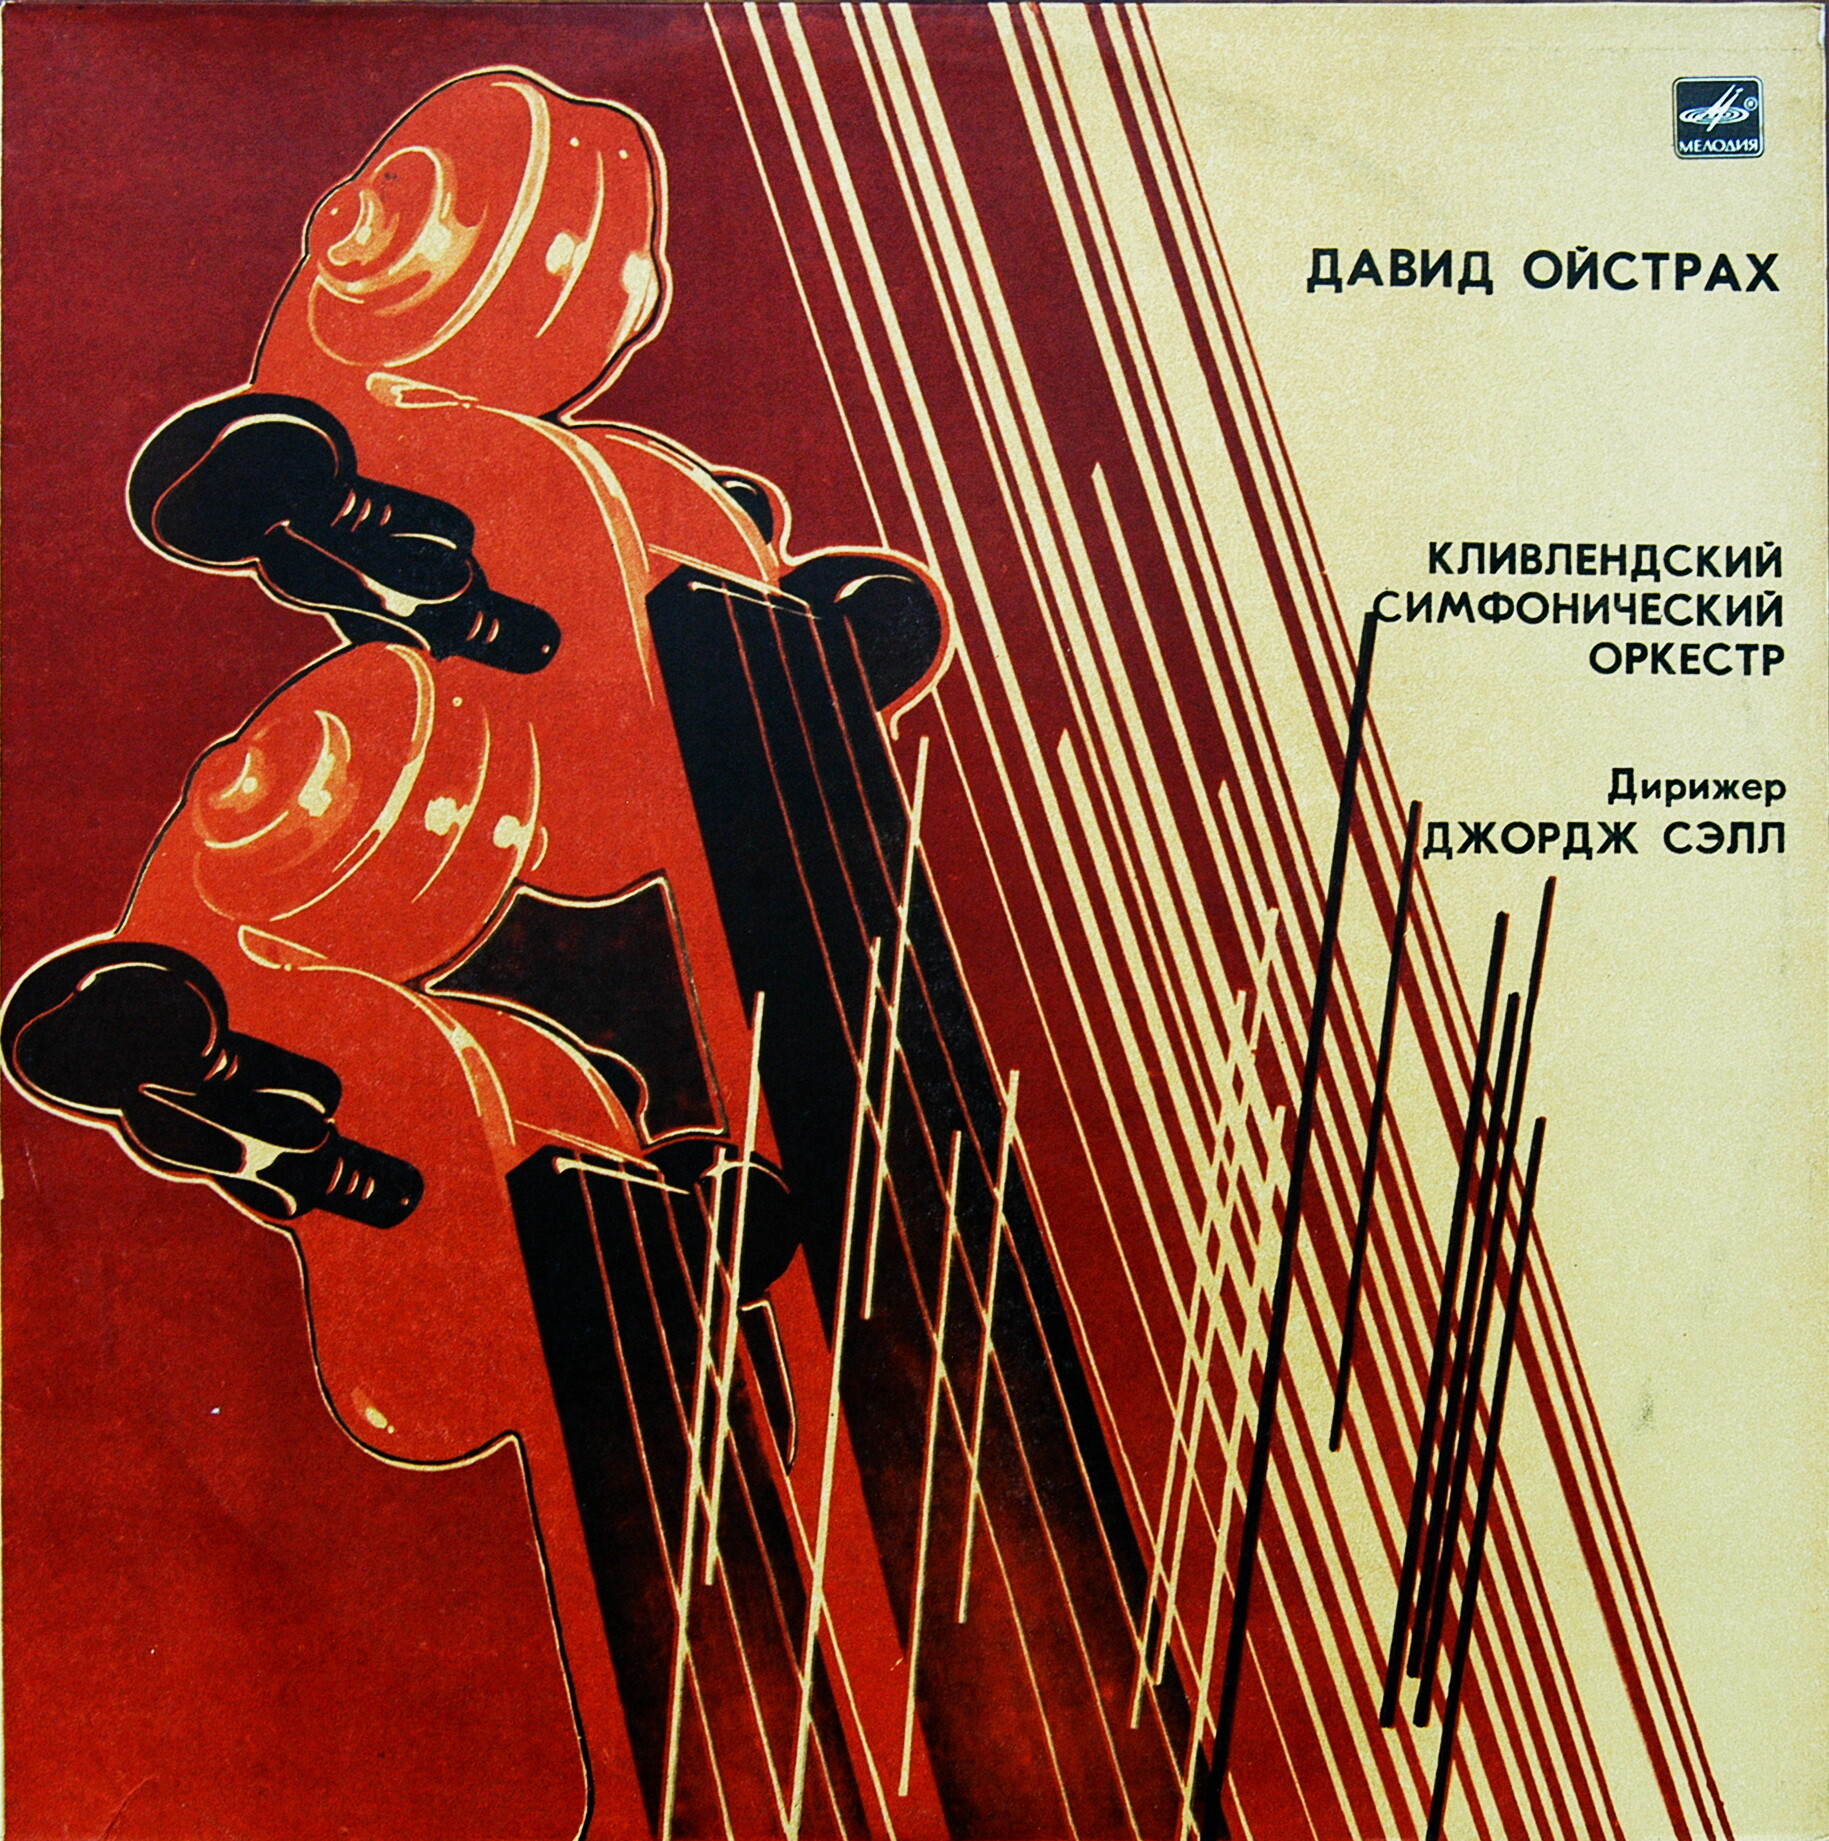 И. Брамс: Концерт для скрипки с оркестром (Д. Ойстрах)